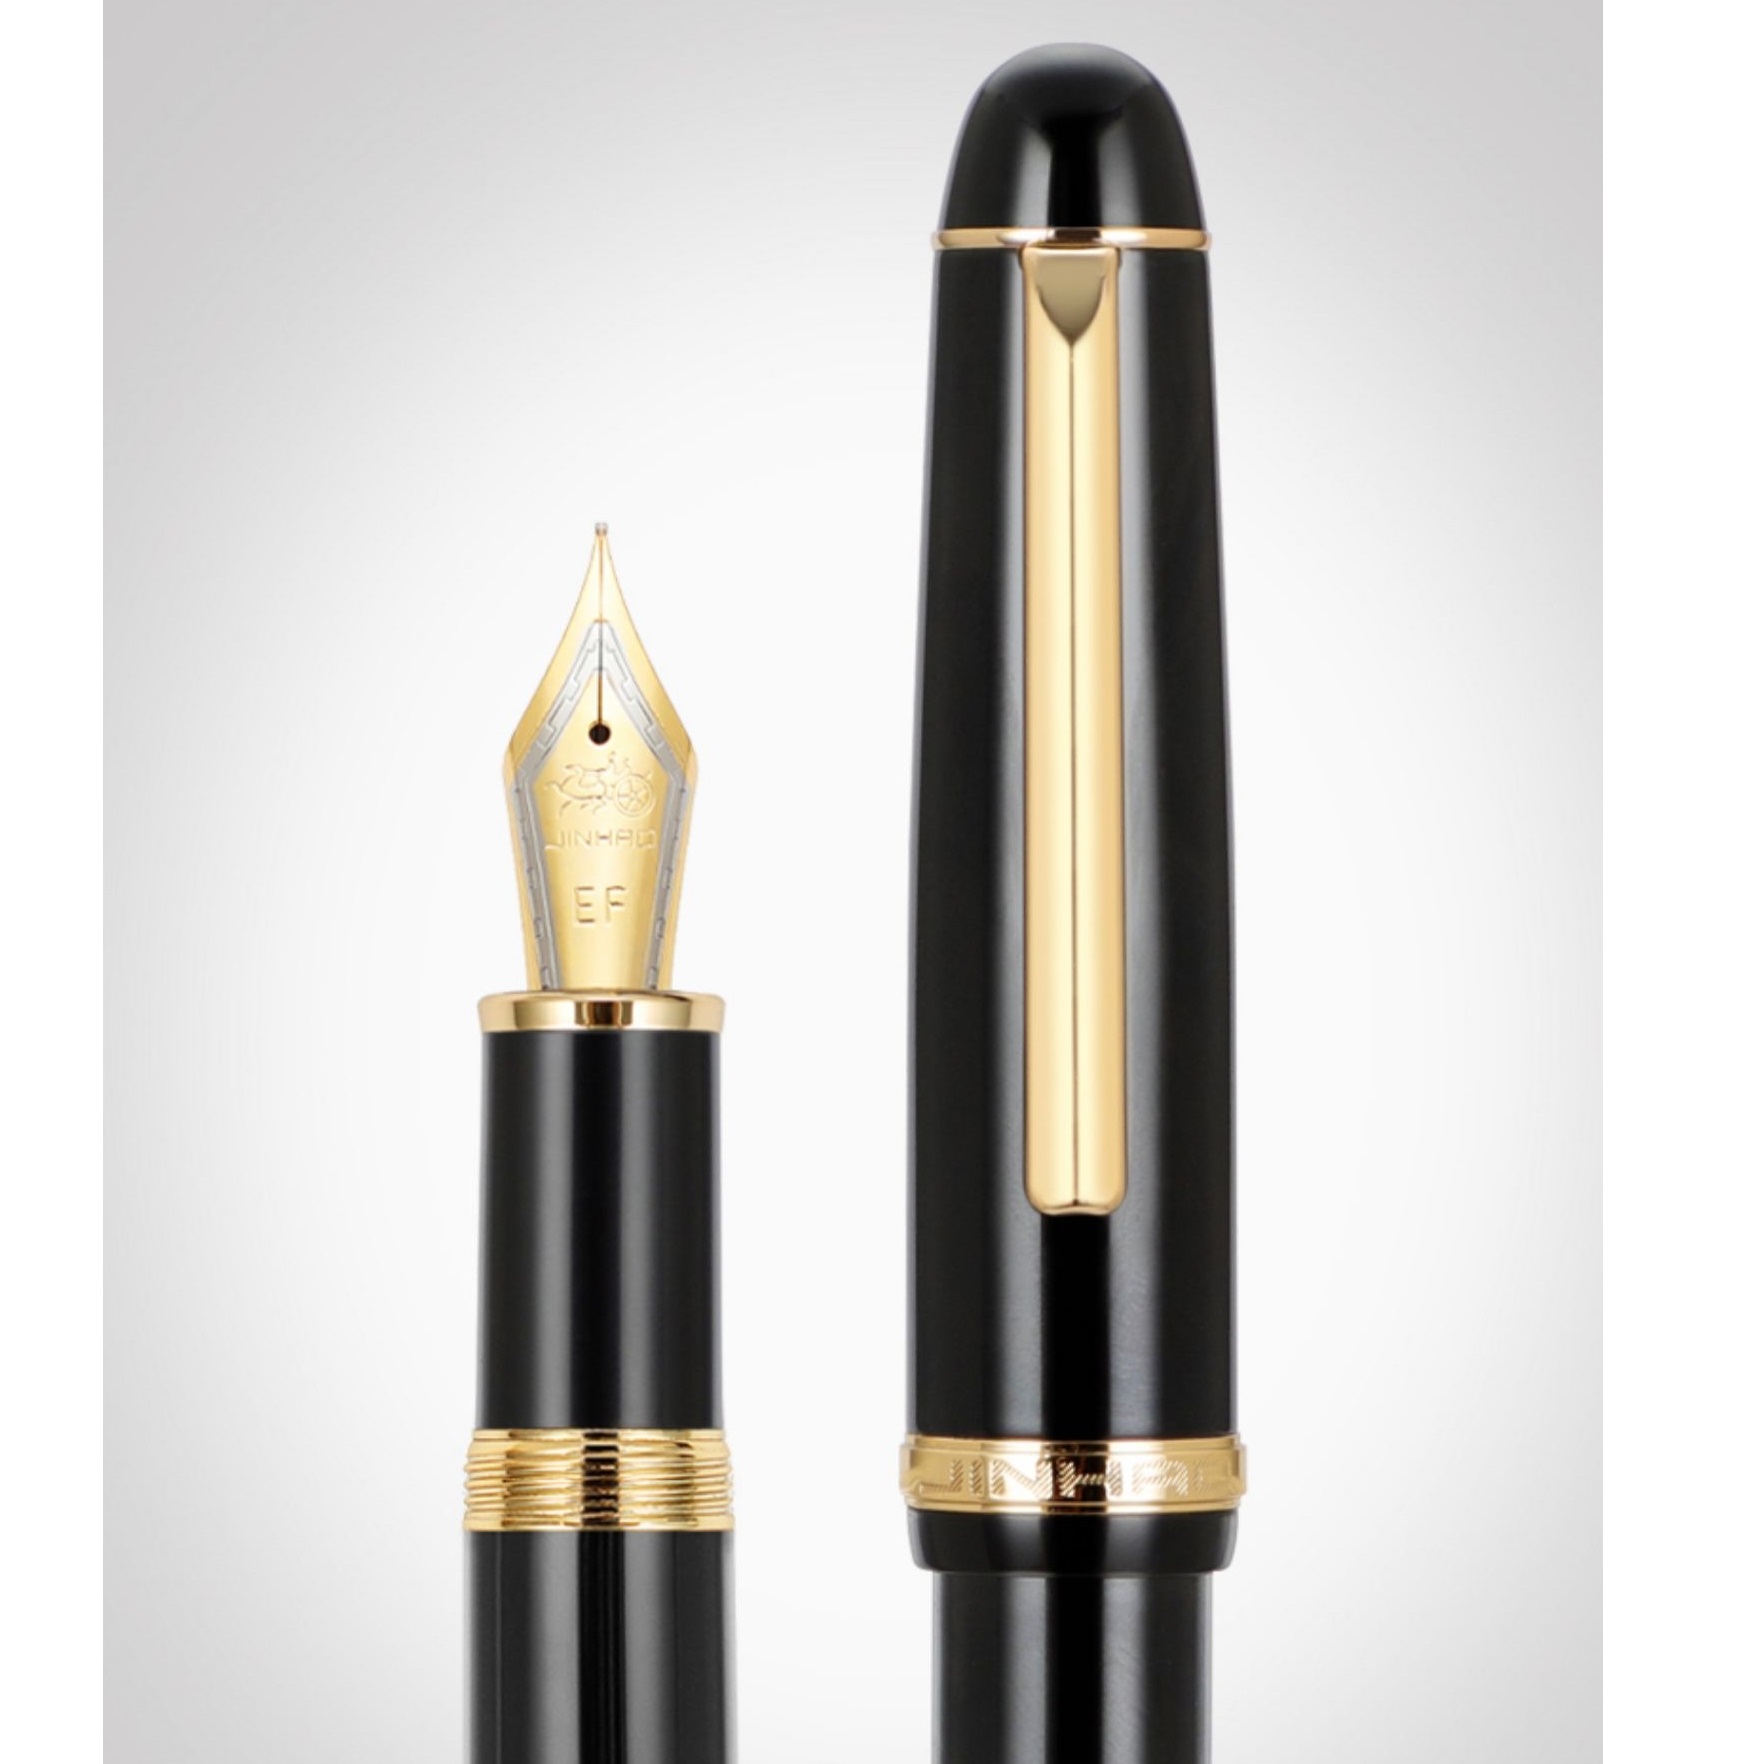 Jinhao x350 tinta de caneta retro elegante clipe de ouro fino / médio lent para escrita Escola de escritório A7345